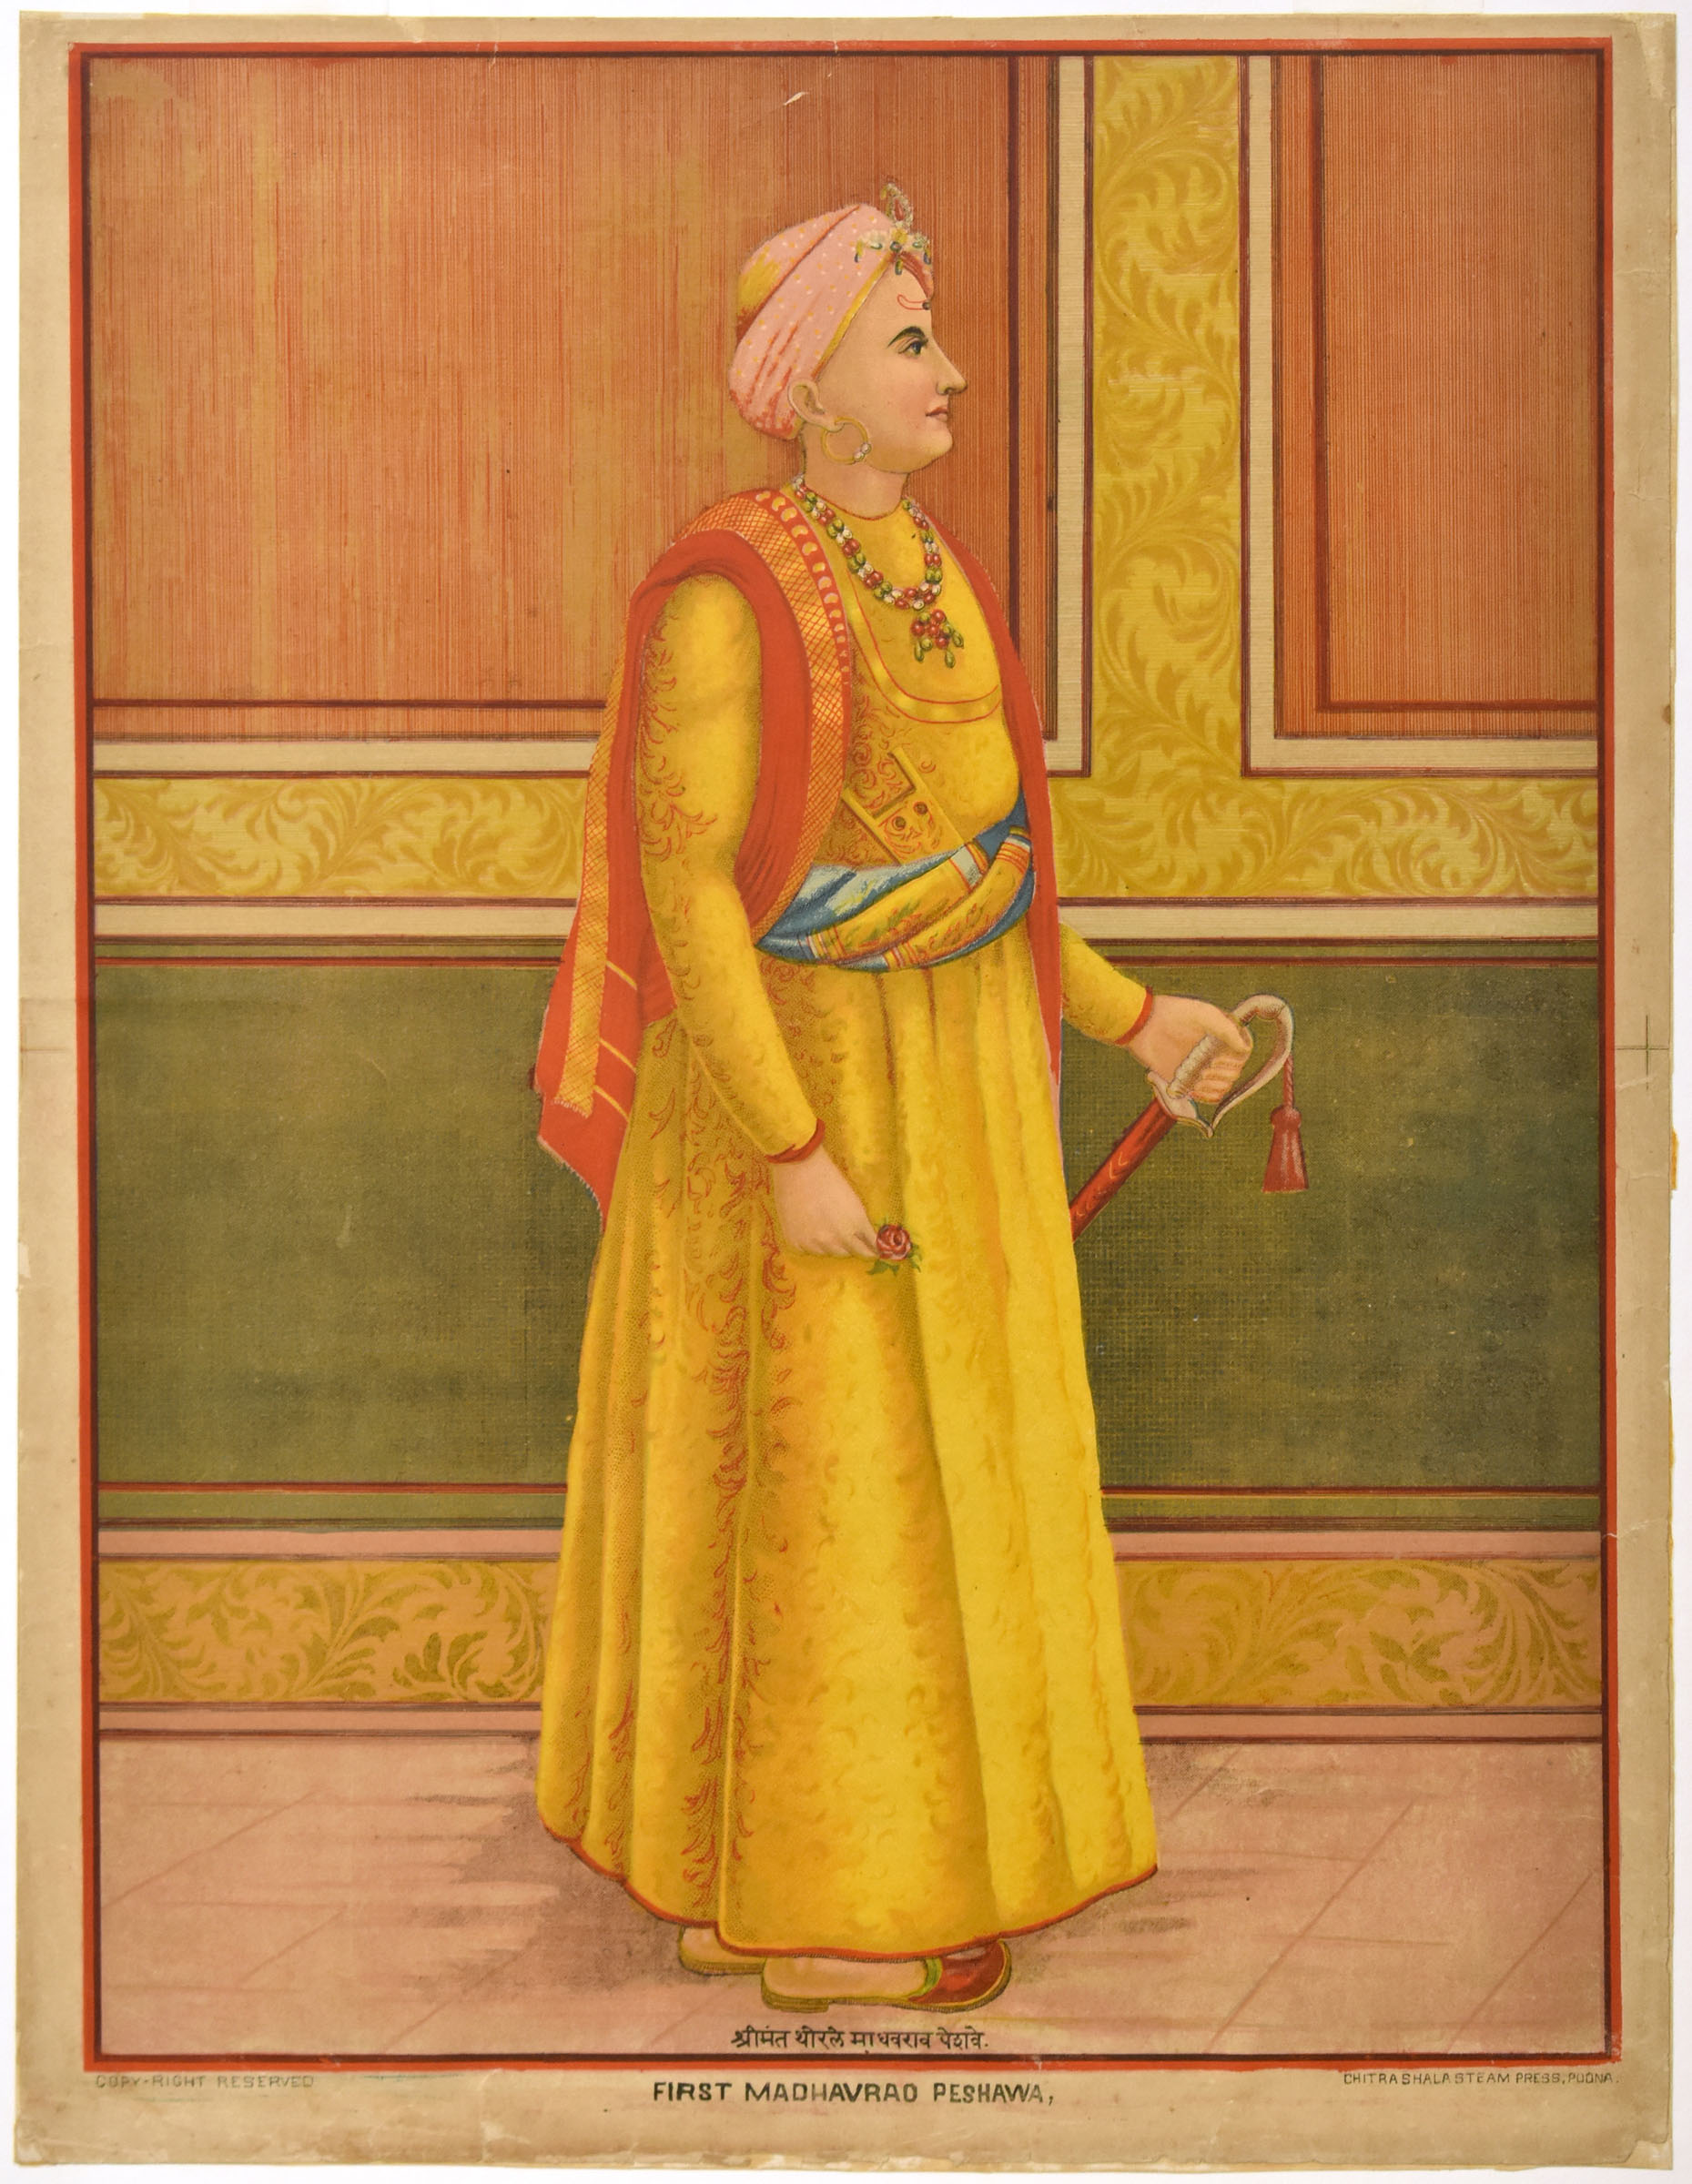 First Madhavrao Peshwa (1745-1772)